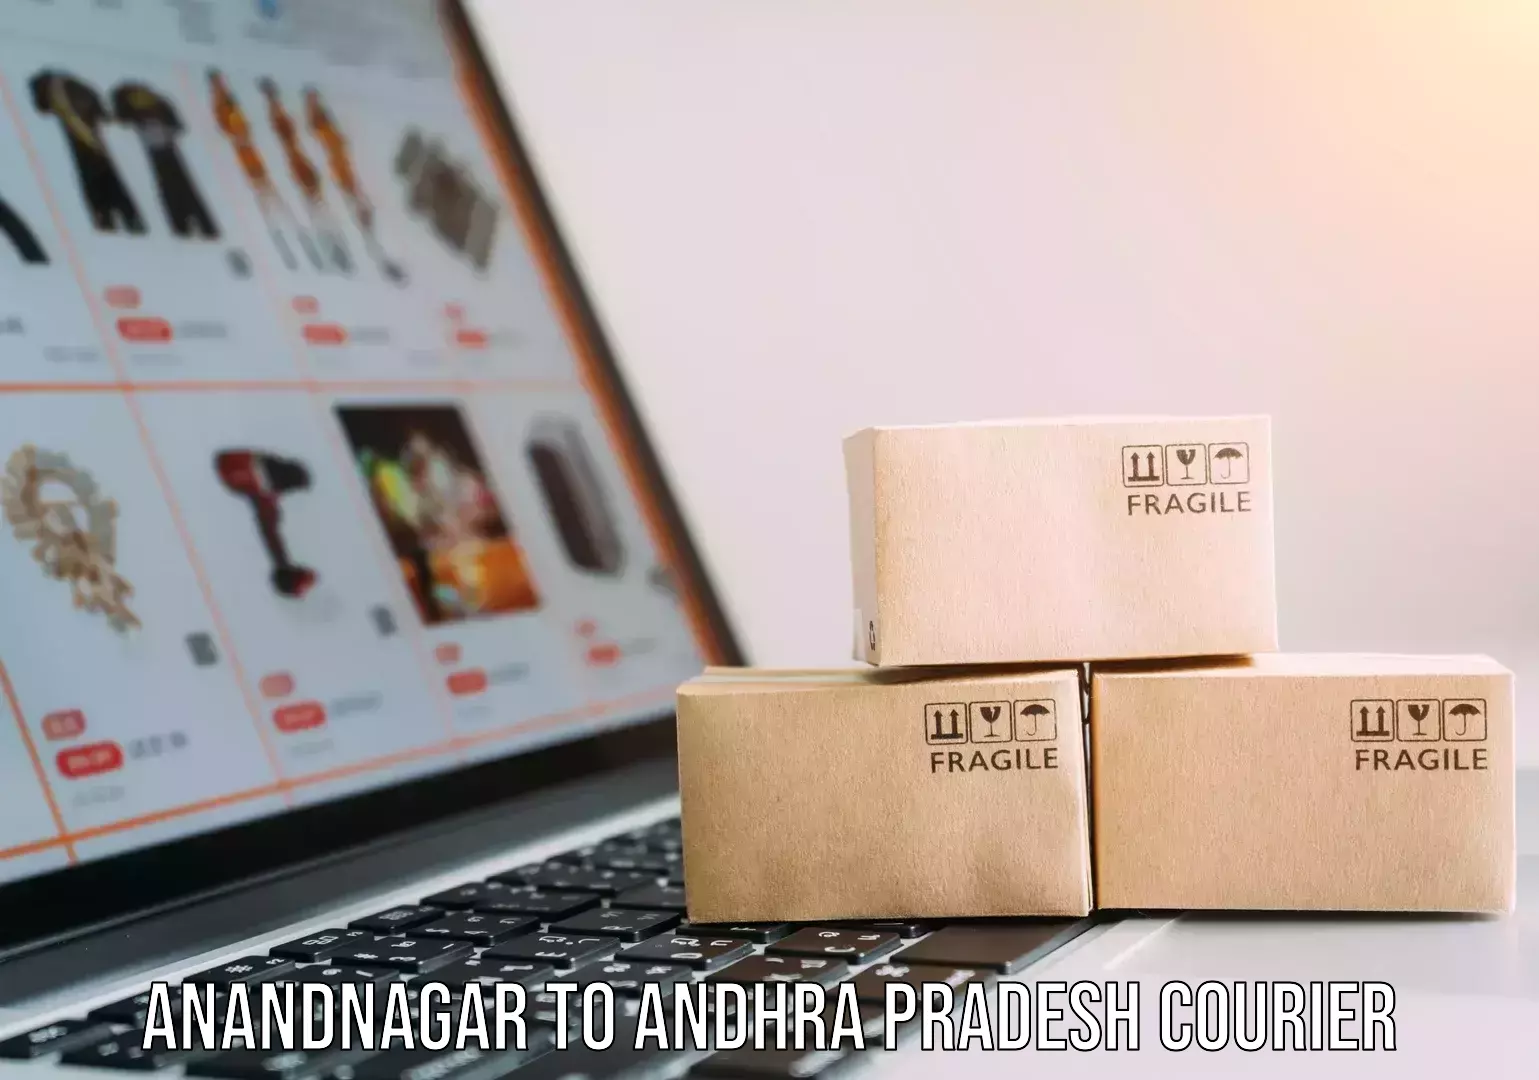 High-capacity shipping options Anandnagar to Andhra Pradesh